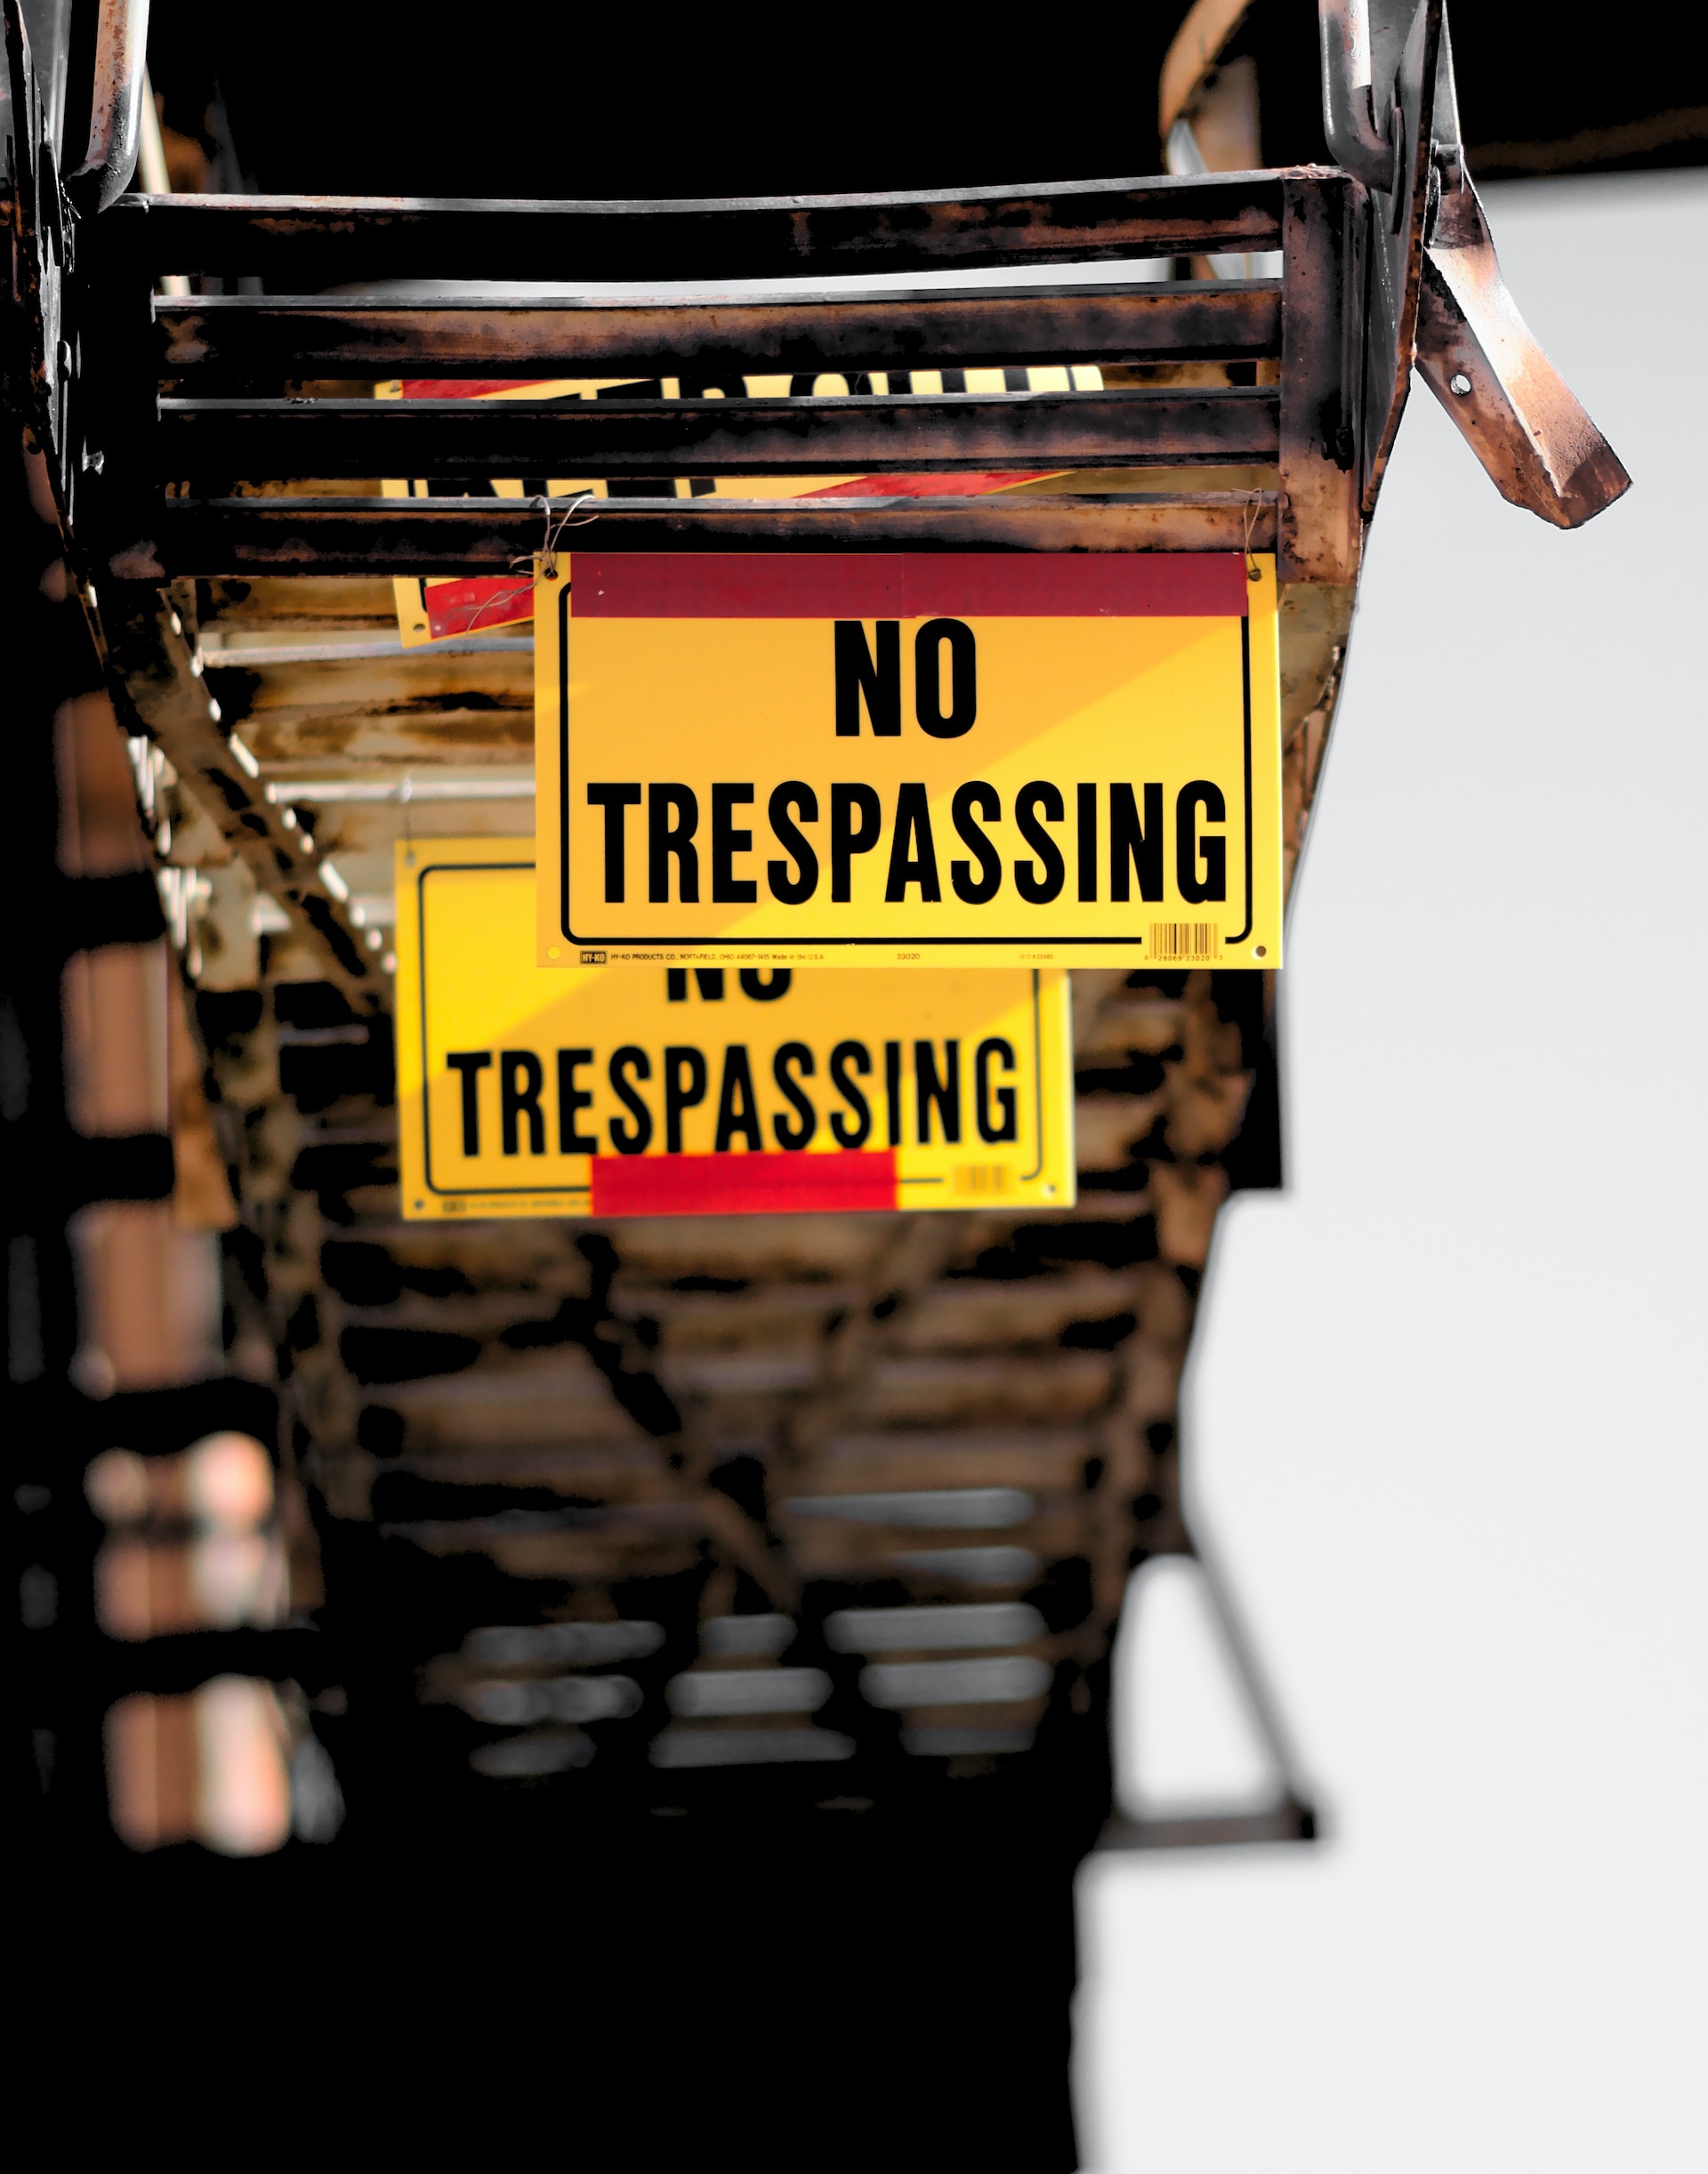 Gelbes Schild mit der Aufschrift 'NO TRESPASSING' befestigt an einem rostigen Metallgitter, was auf Maßnahmen zur Perimeterkontrolle hinweist.